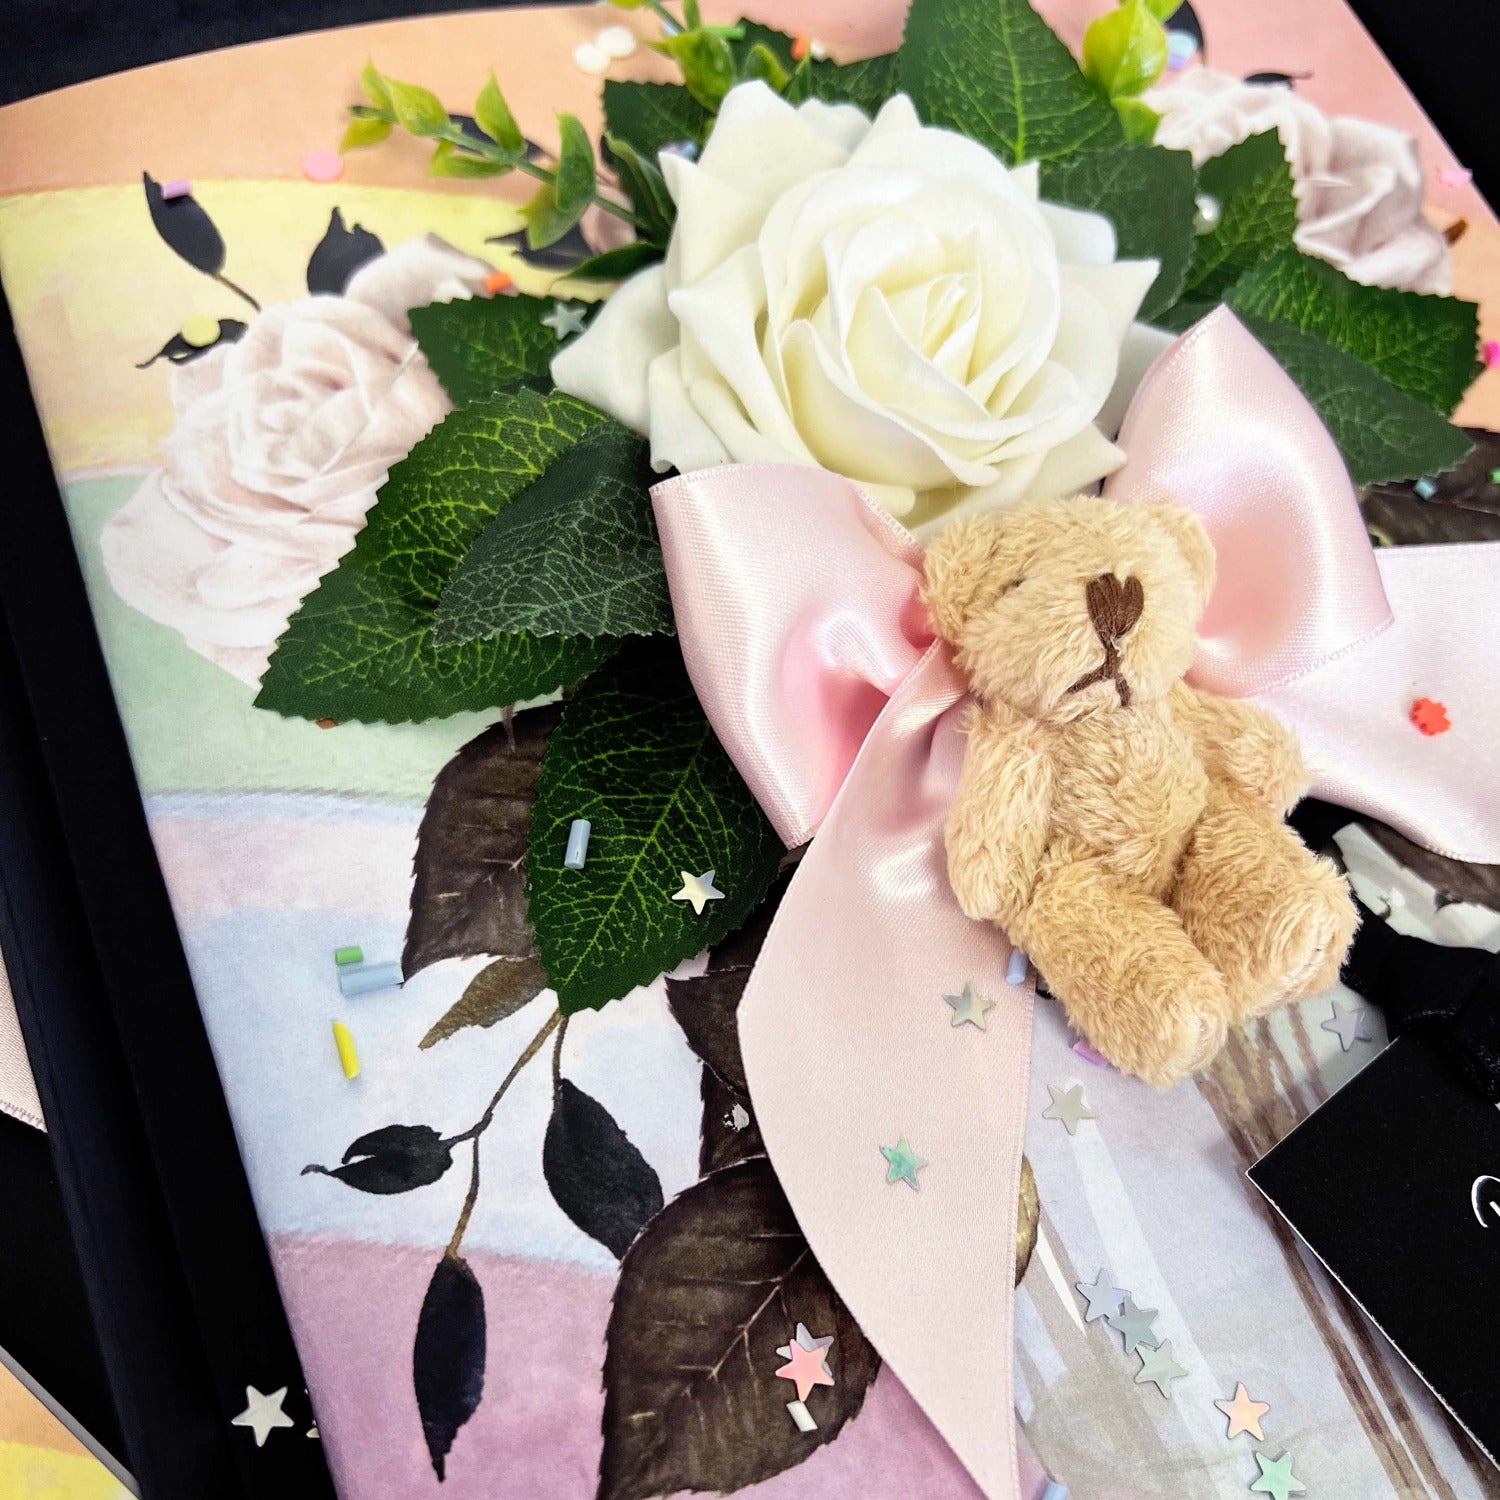 Teddybear on a card | Luxury handmade teddybear cards by The Luxe Co